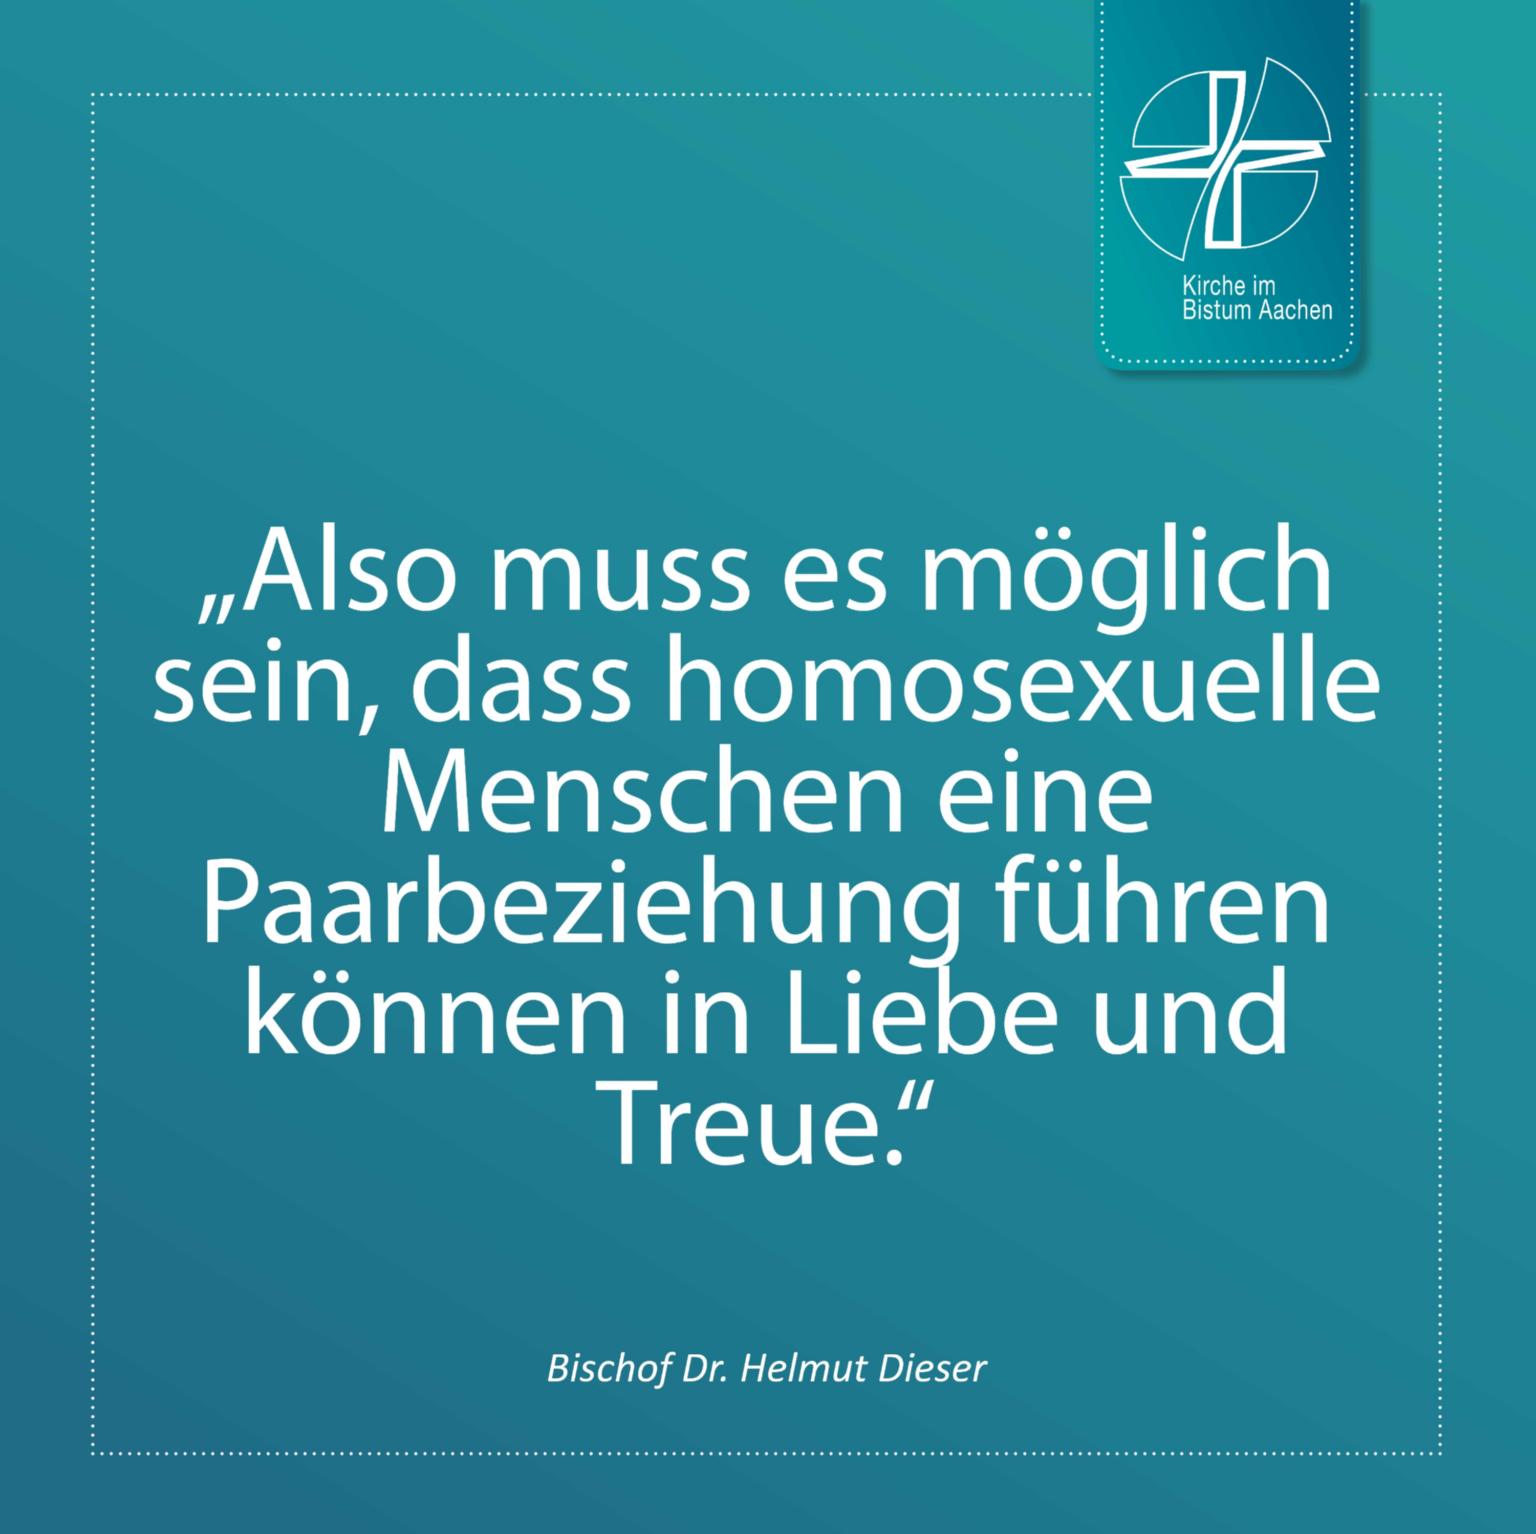 Bischof Dr. Helmut Dieser - Zitat 10 (c) Bistum Aachen